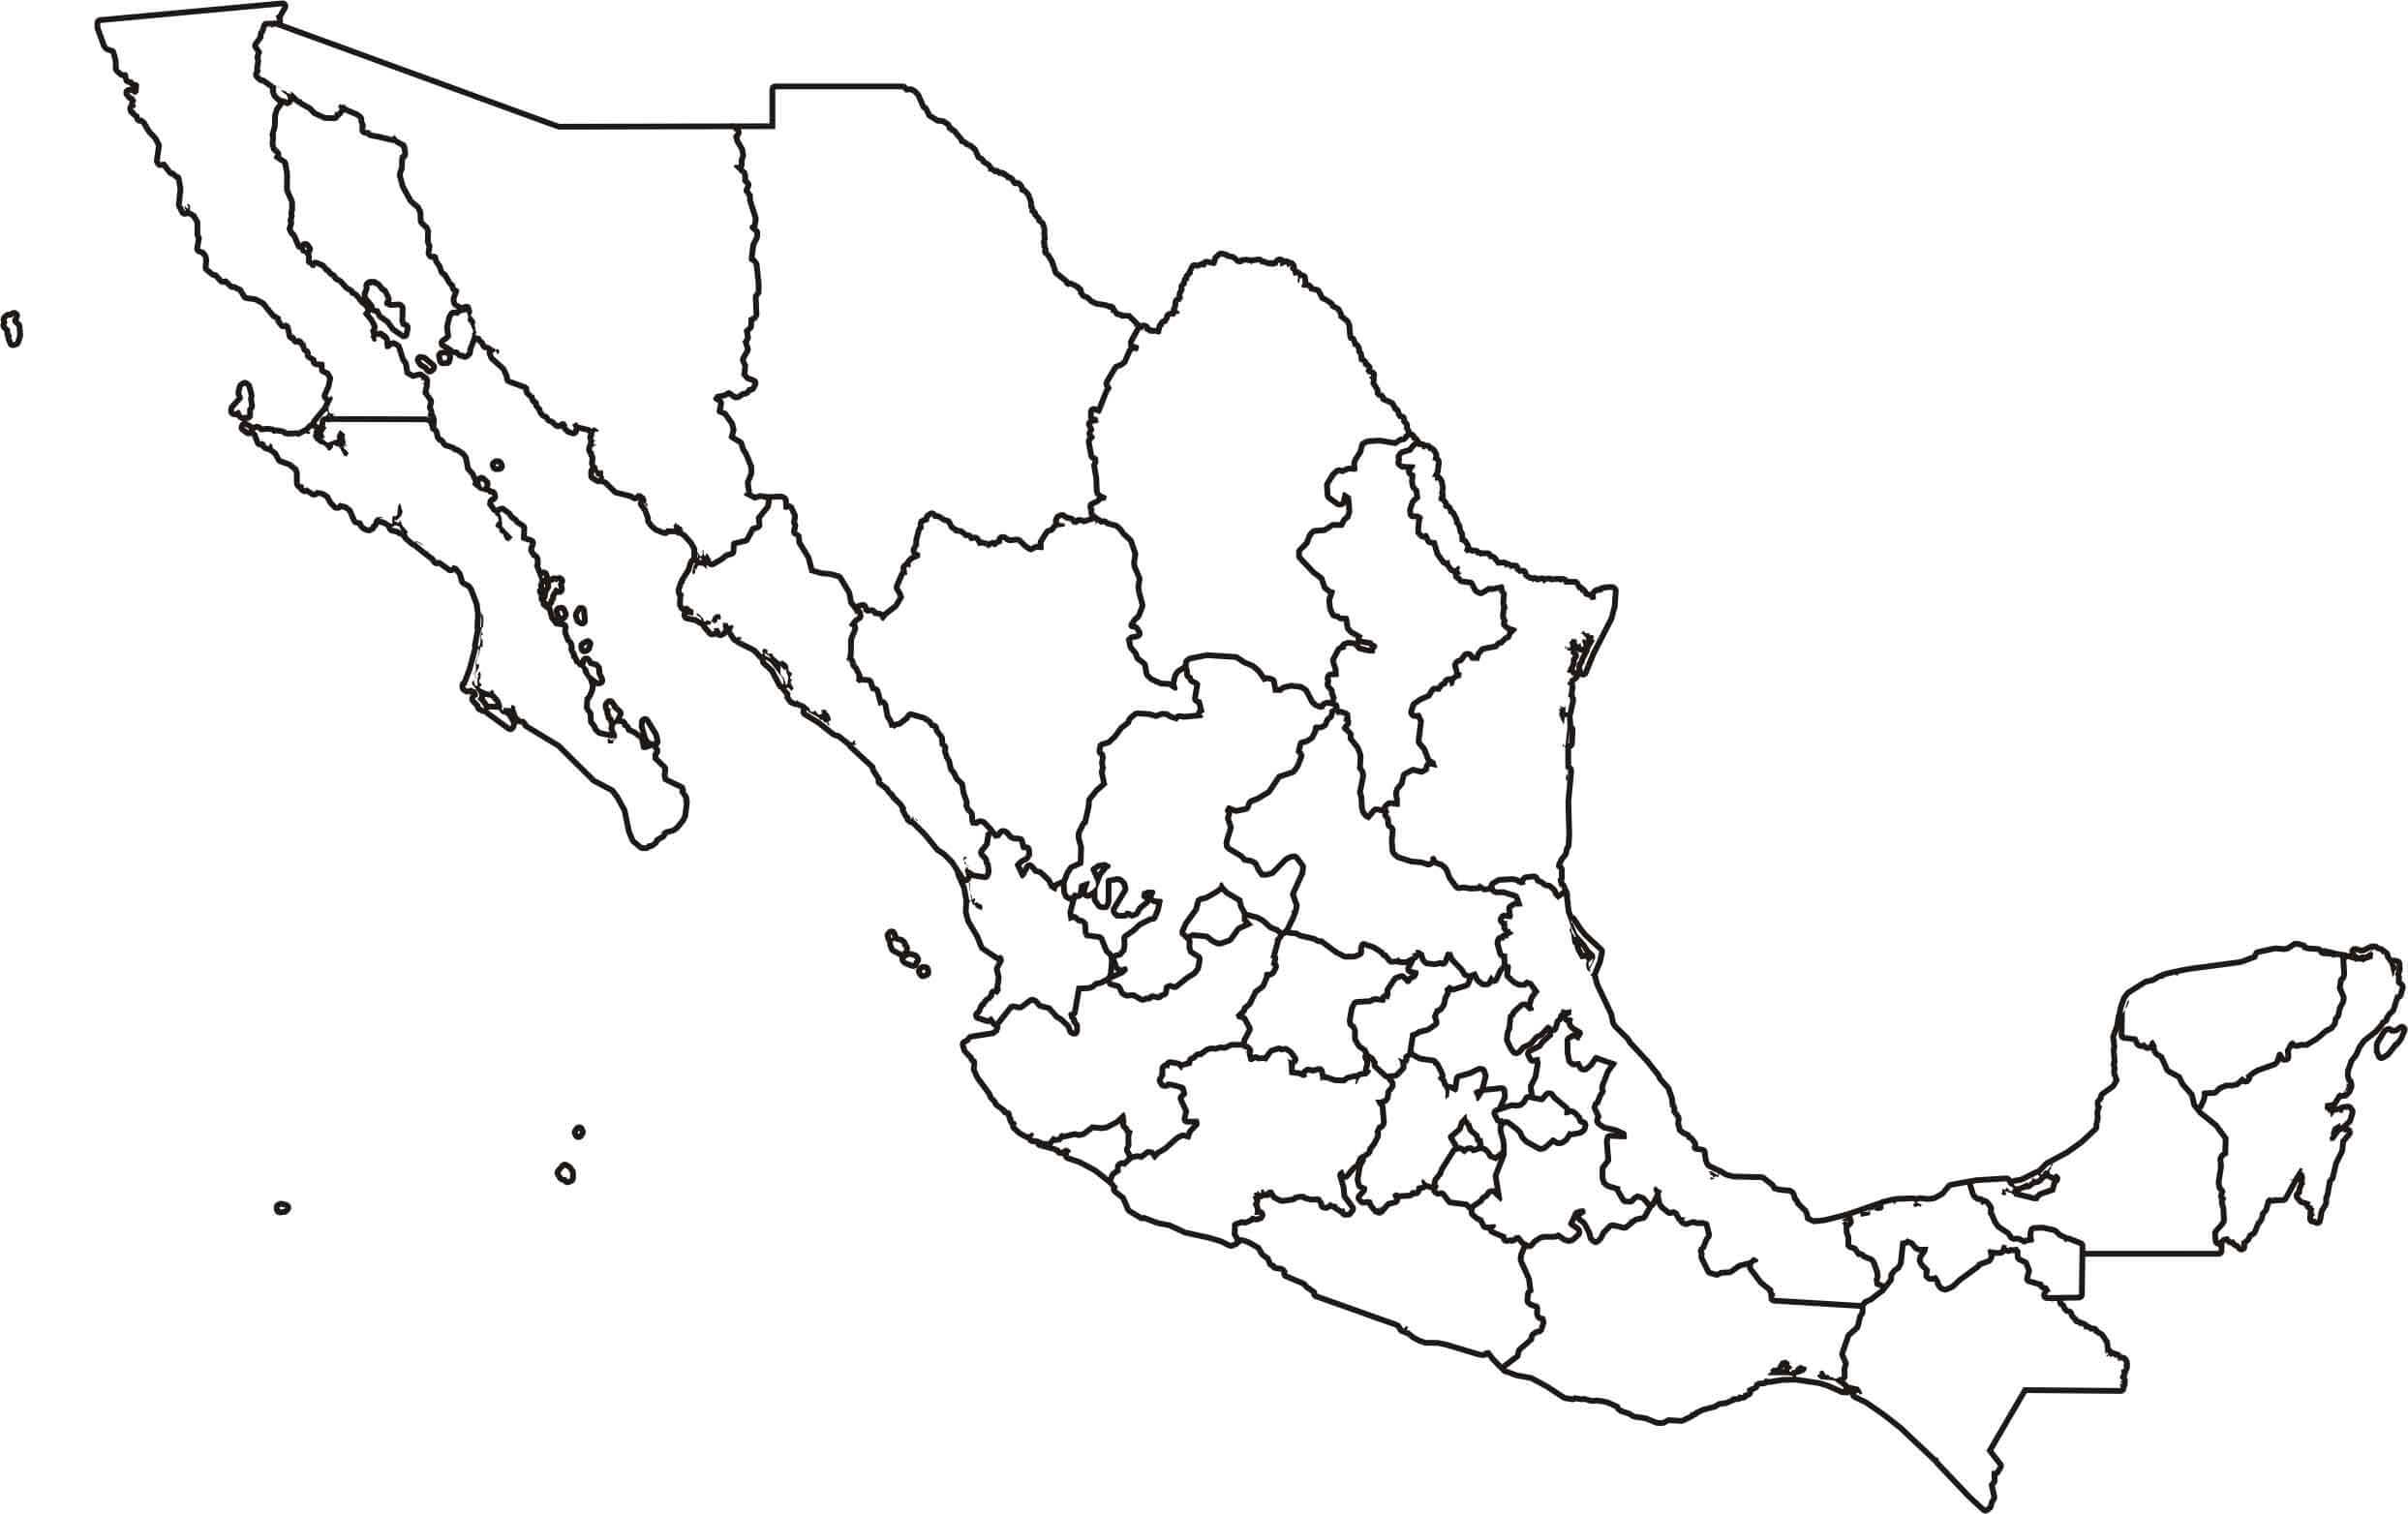 mapa de mexico y estados unidos sin nombres